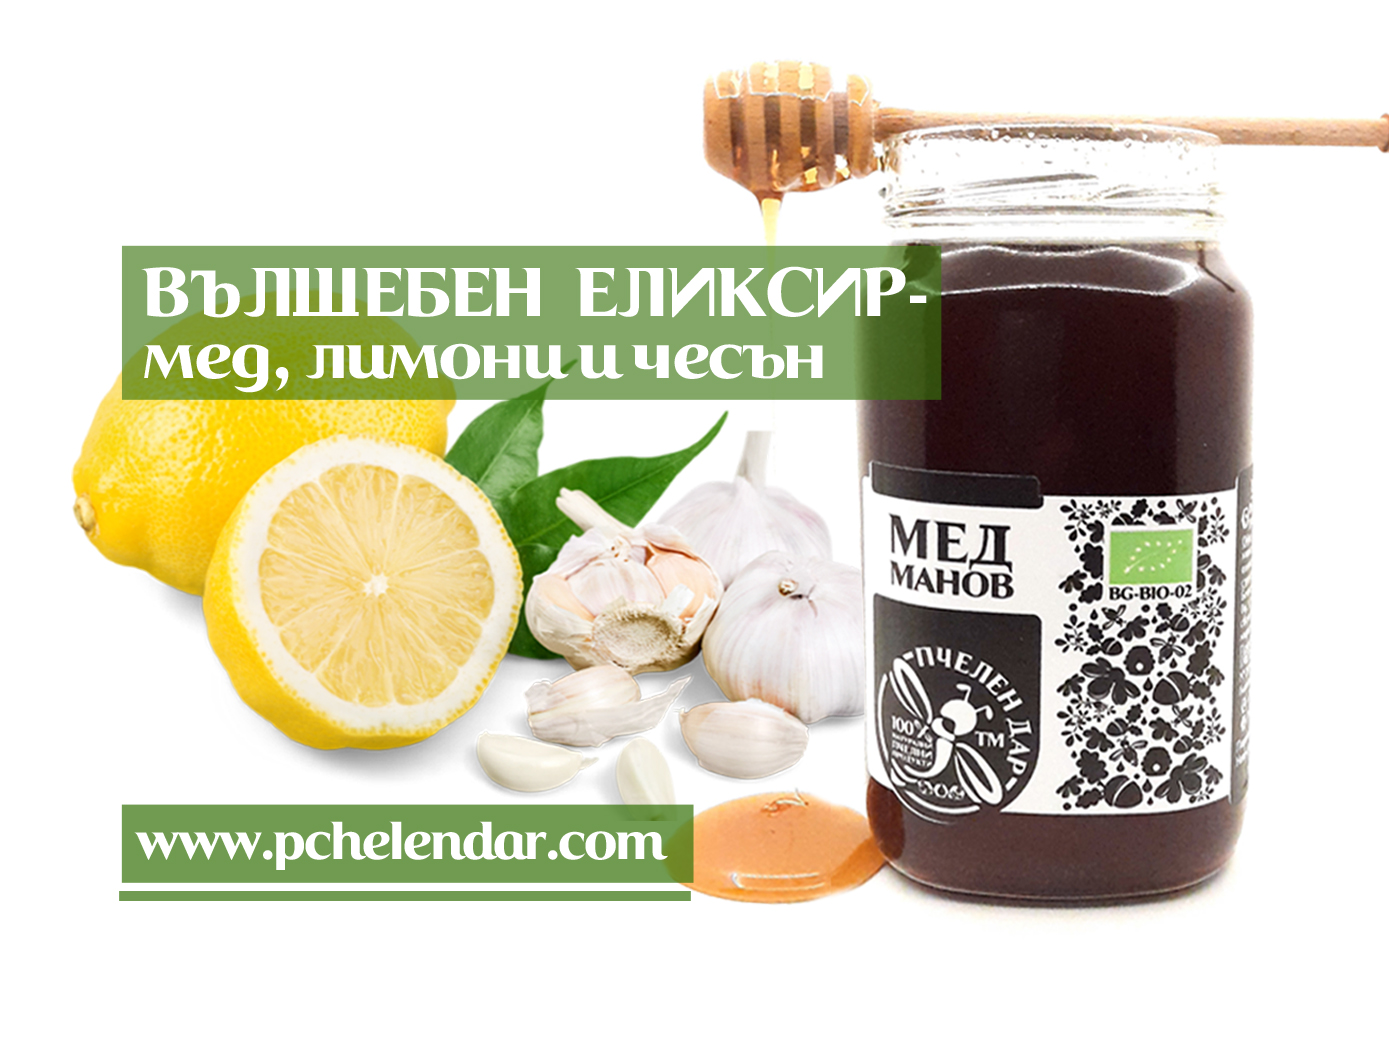 ВЪЛШЕБЕН ЕЛИКСИР - мед, лимони и чесън